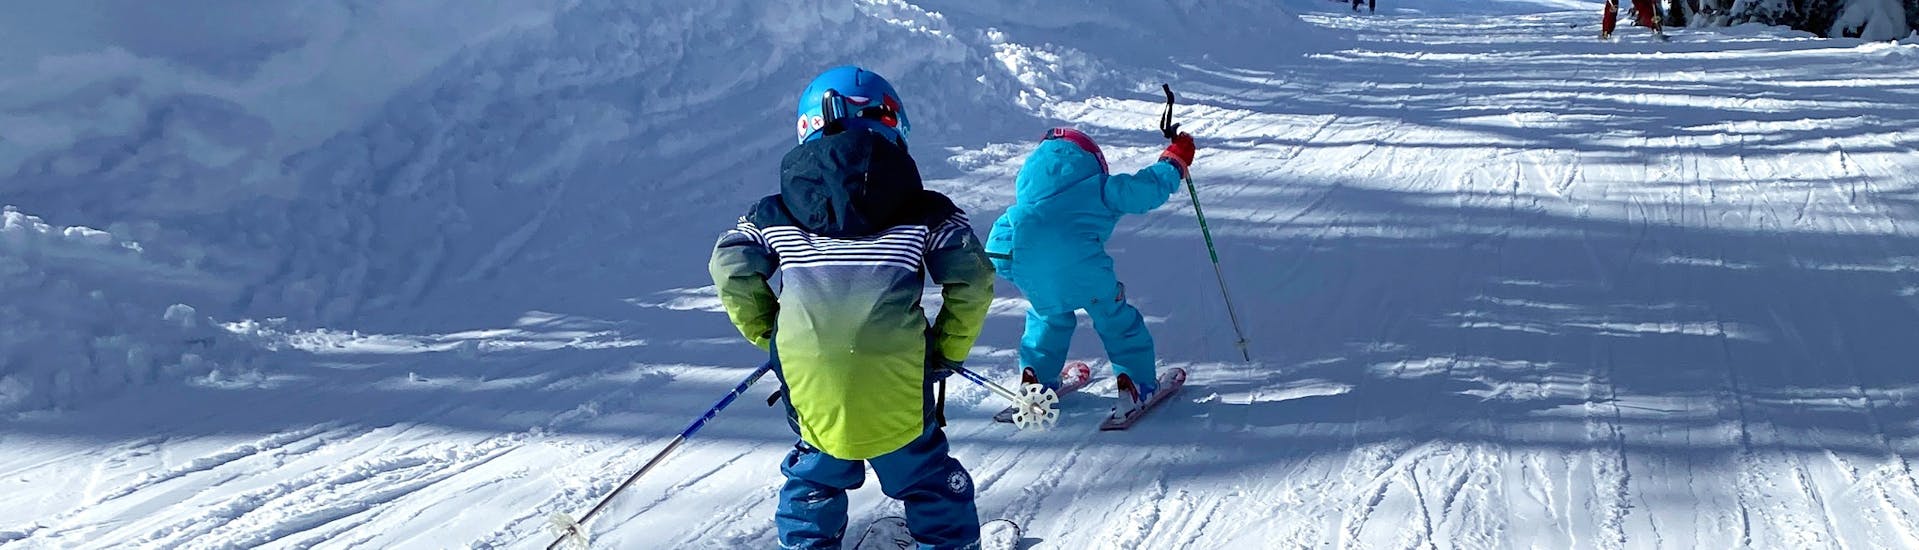 Privater Kinder-Skikurs ab 3 Jahren ohne Erfahrung.